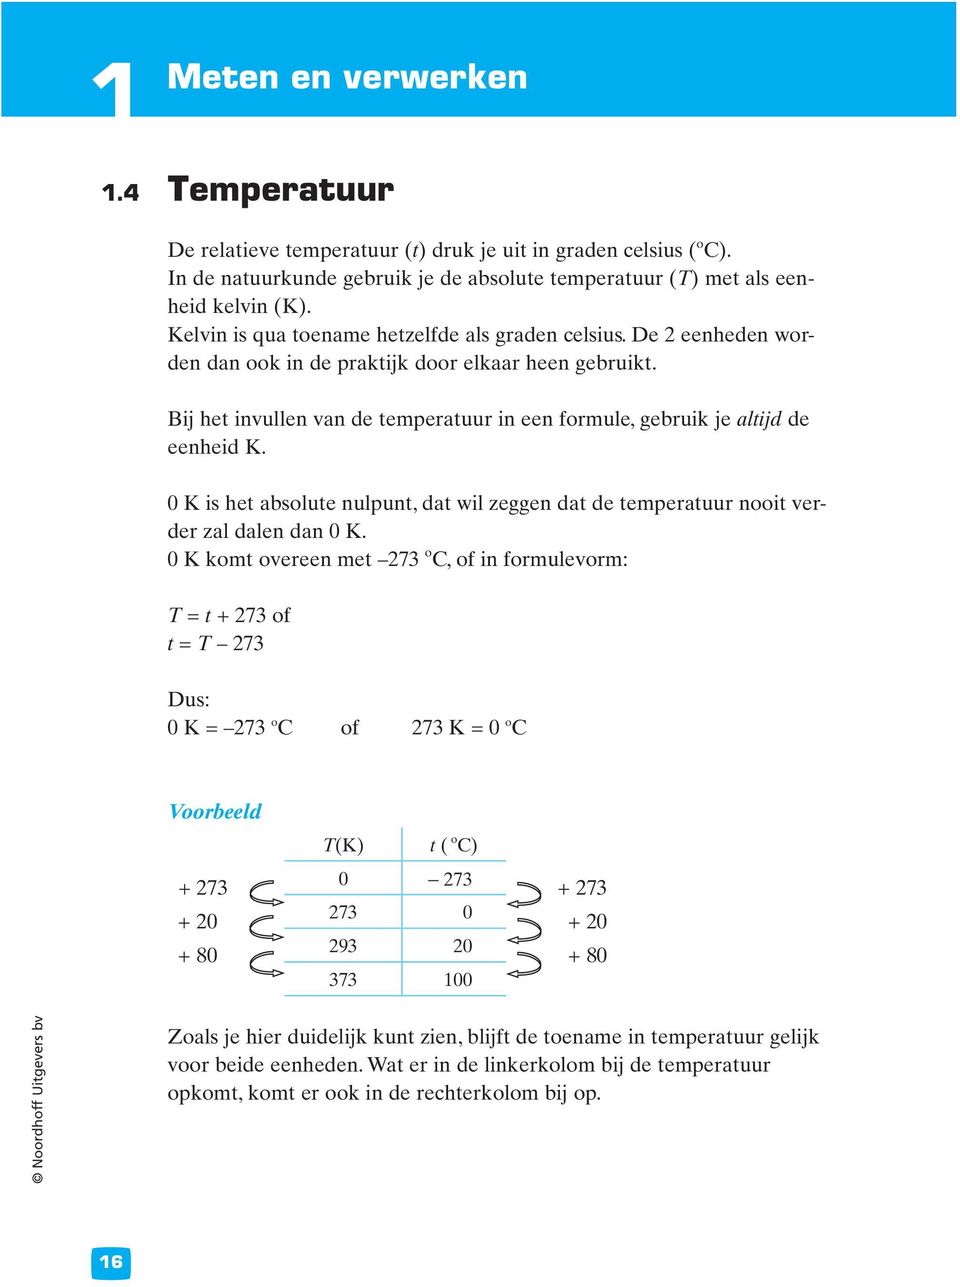 Bij het invullen van de temperatuur in een formule, gebruik je altijd de eenheid K. 0 K is het absolute nulpunt, dat wil zeggen dat de temperatuur nooit verder zal dalen dan 0 K.